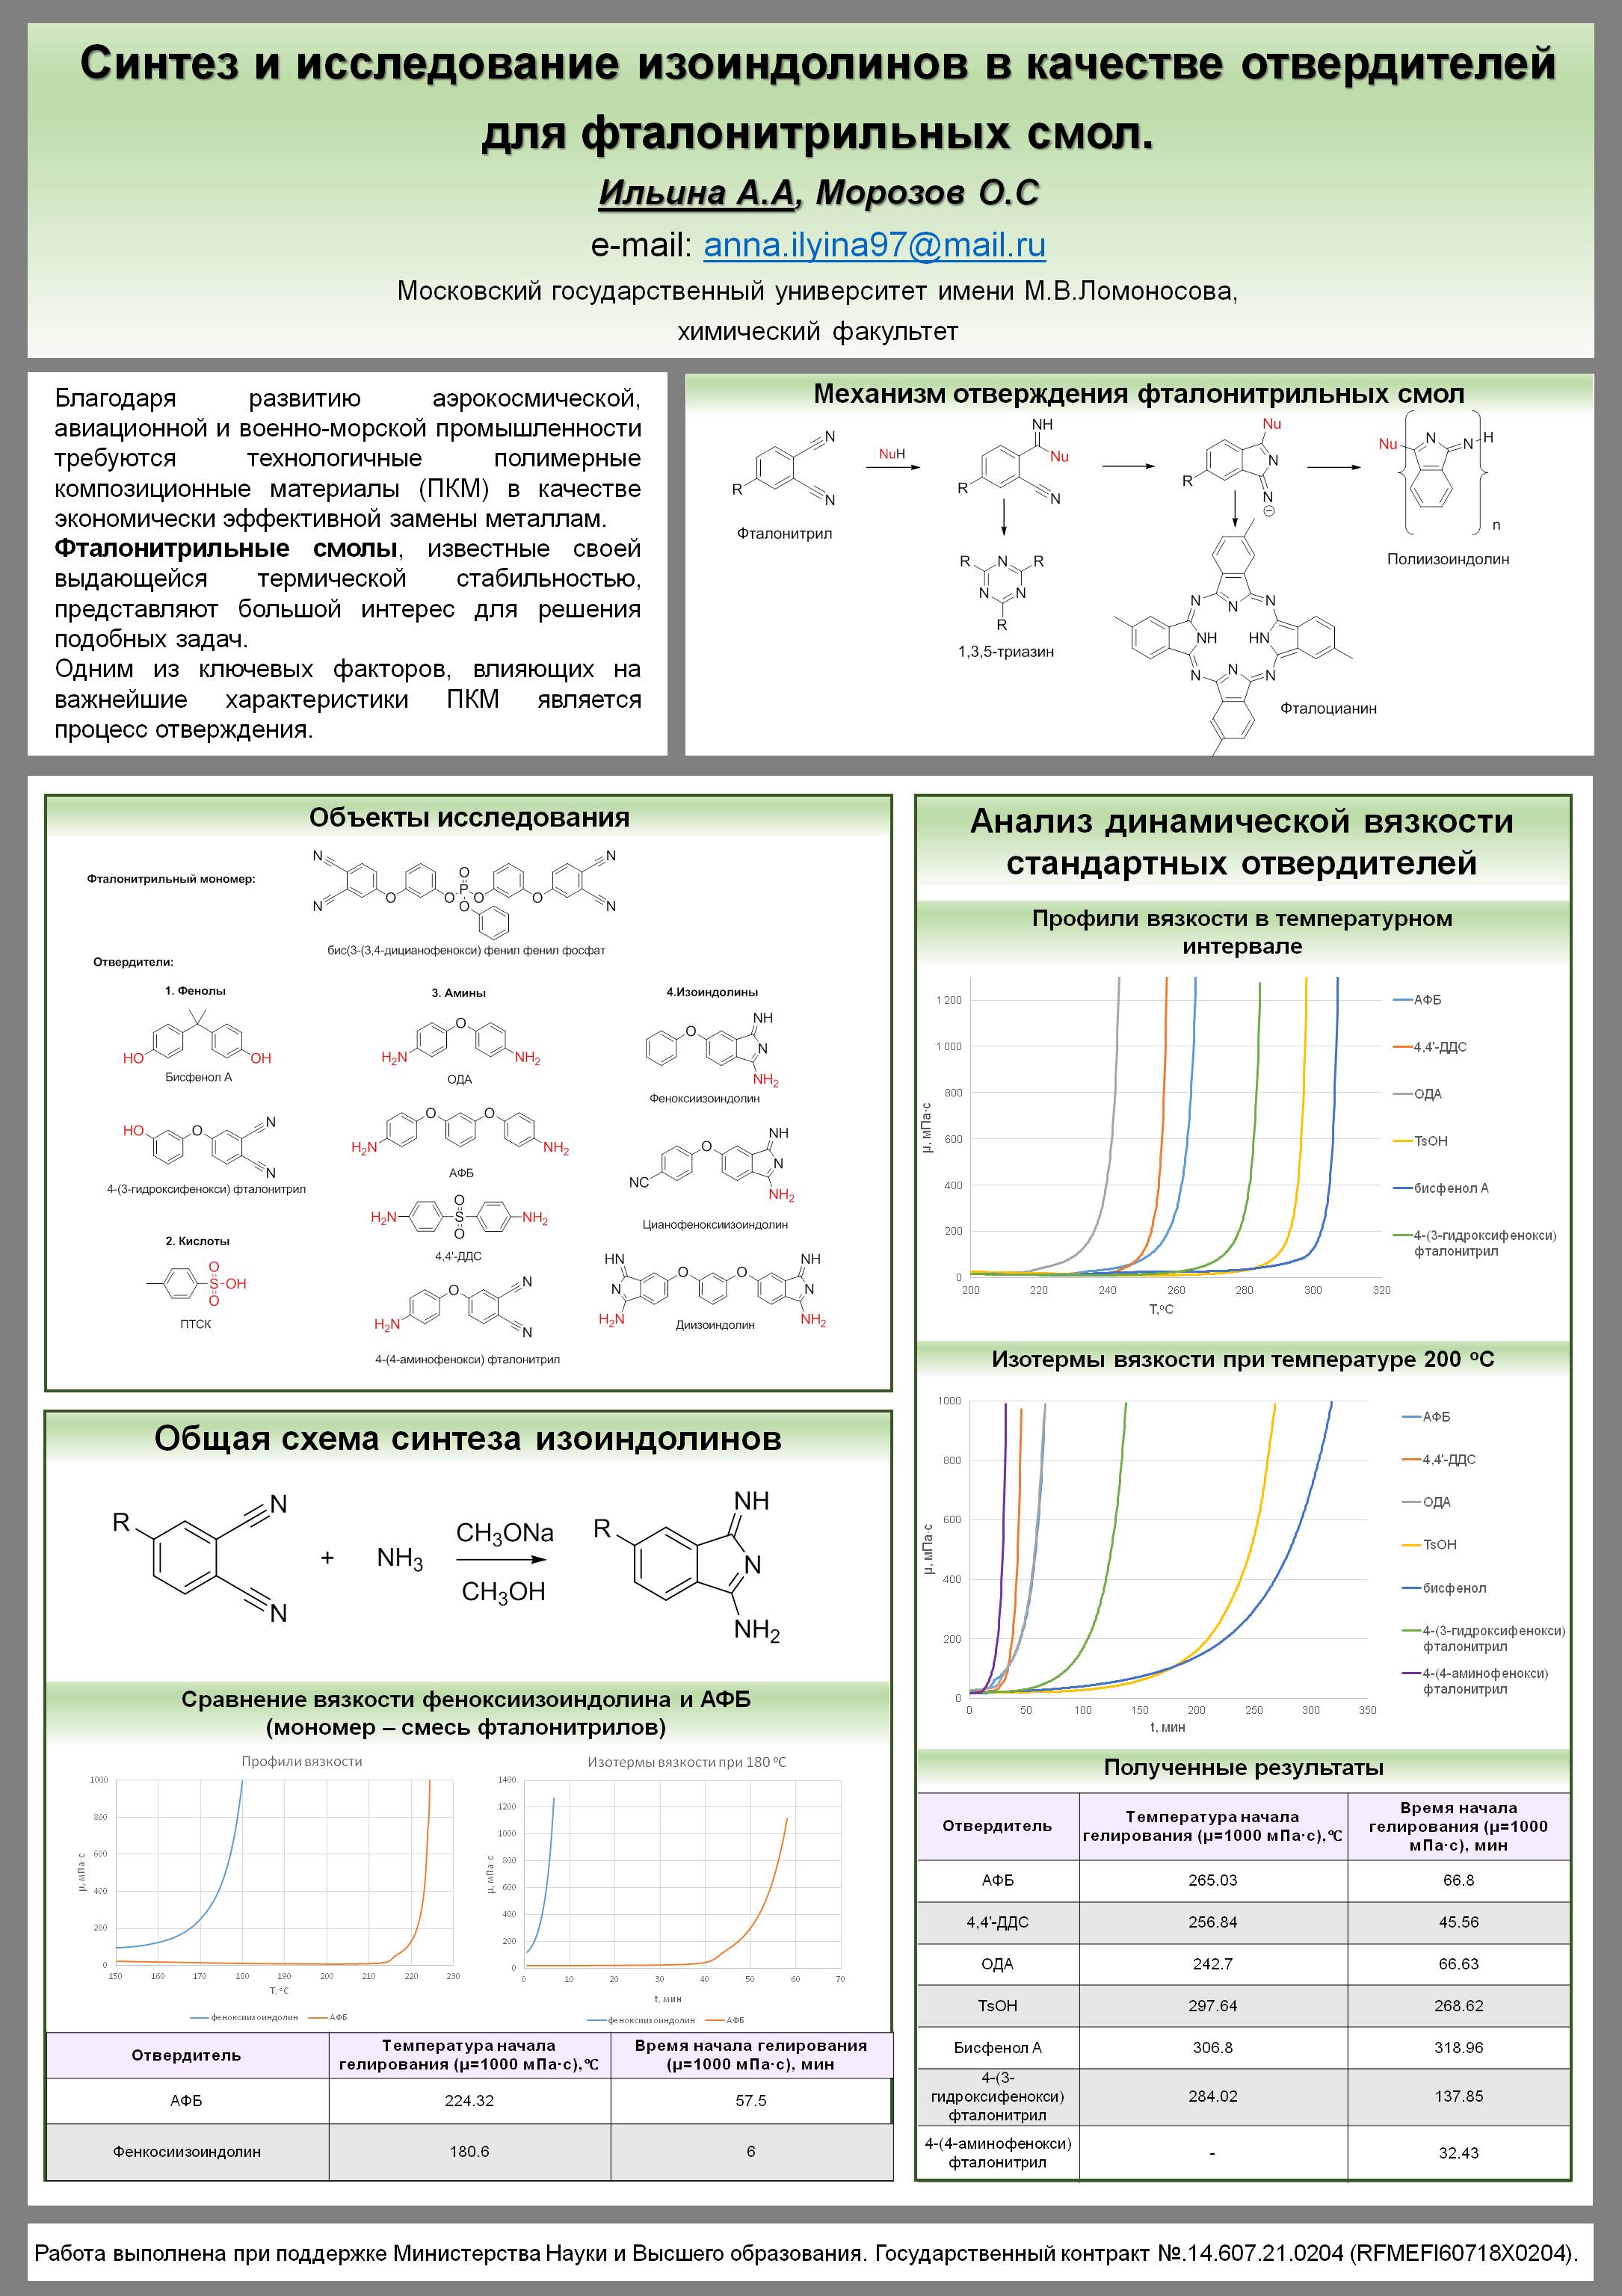 Синтез и исследование изоиндолинов в качестве отвердителей для фталонитрильных смол